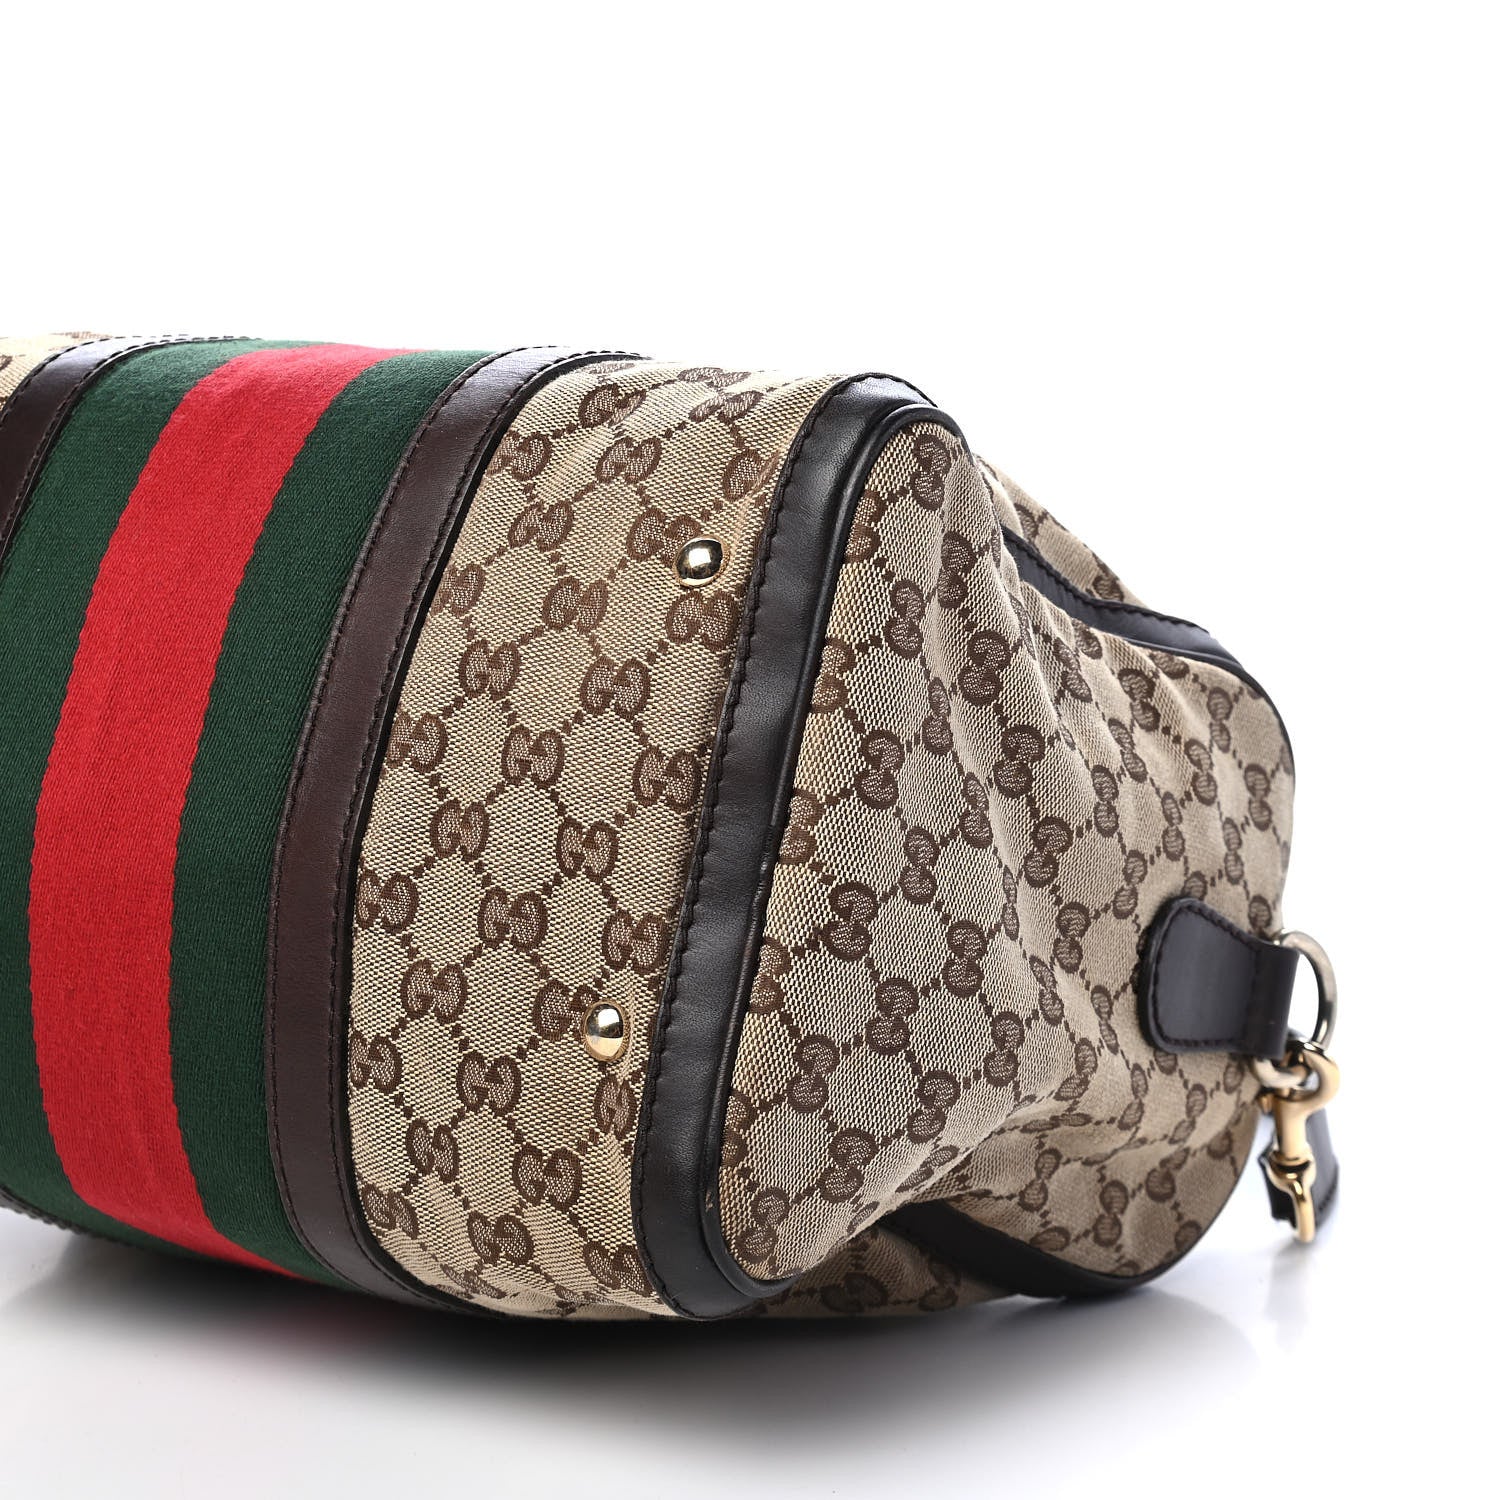 Gucci, Bags, Authentic Gucci Boston Bag